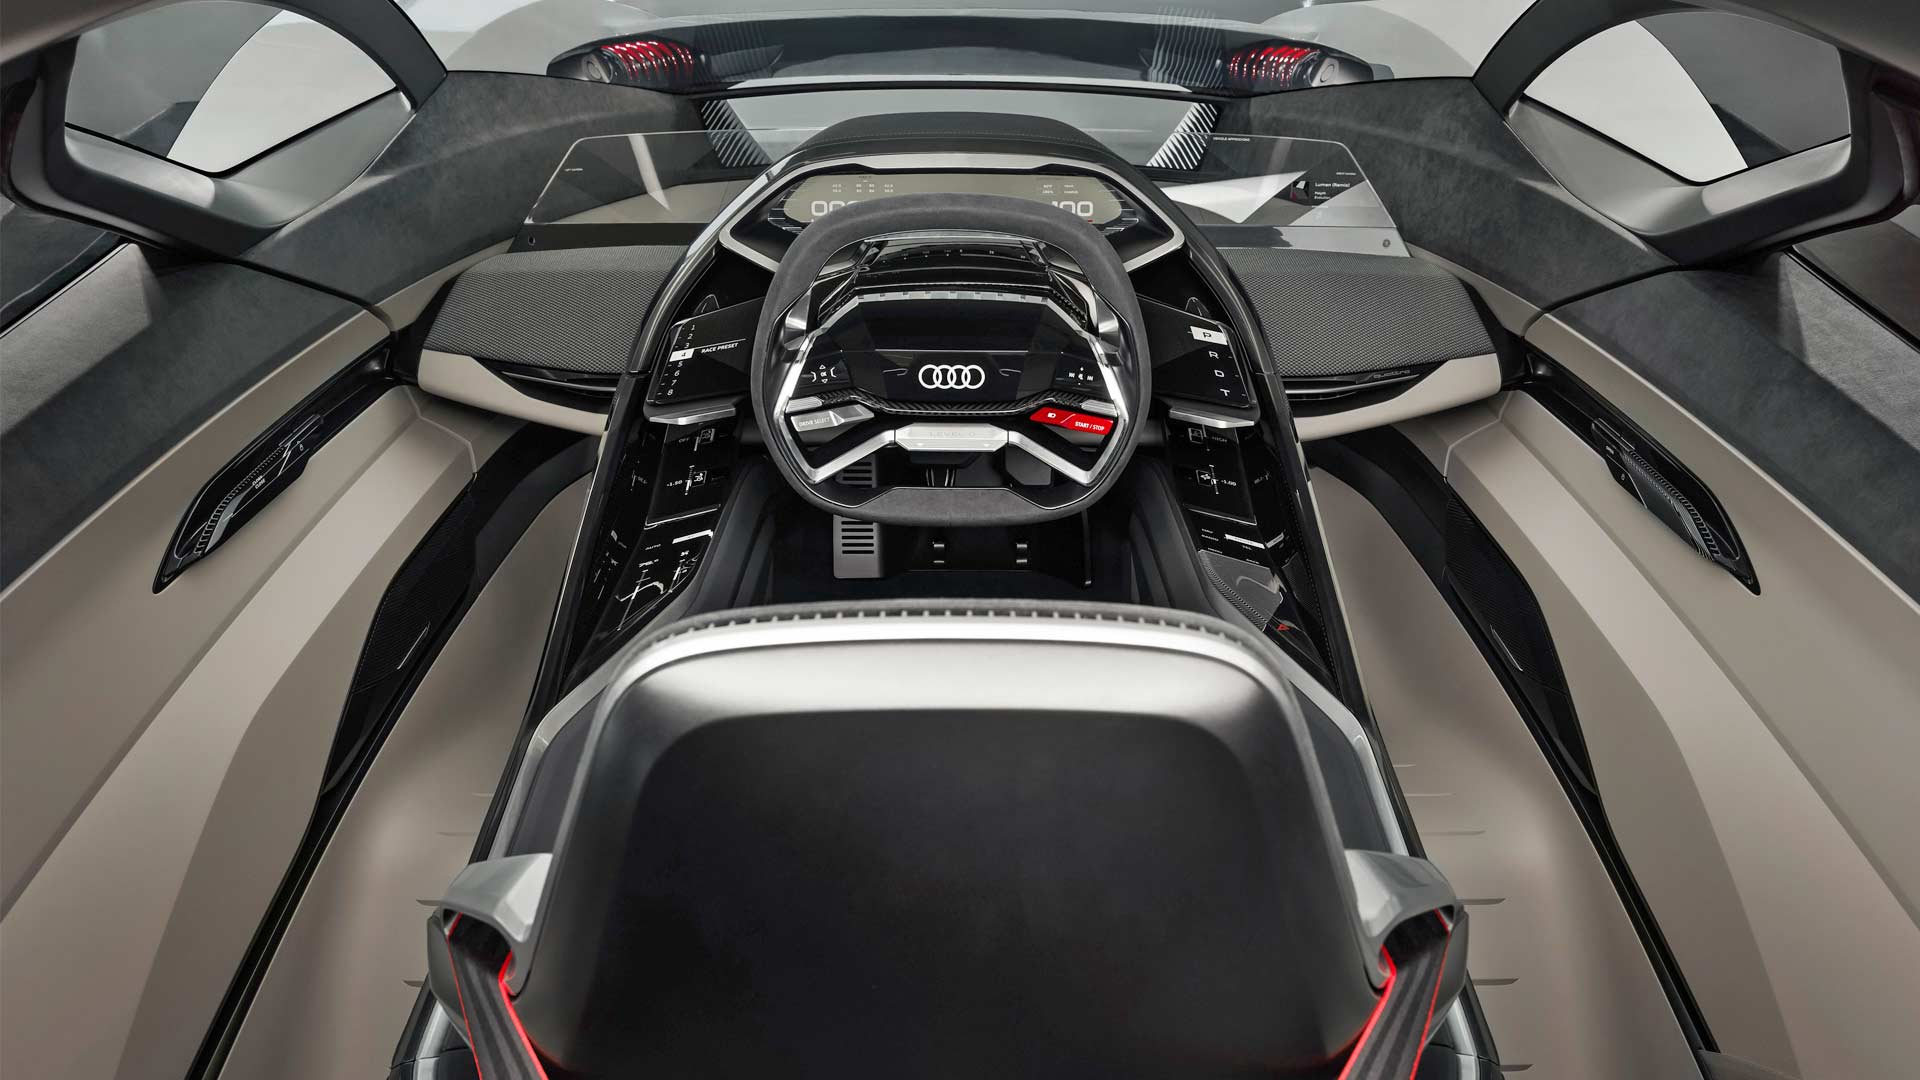 Audi-PB18-e-tron-concept-interior_4